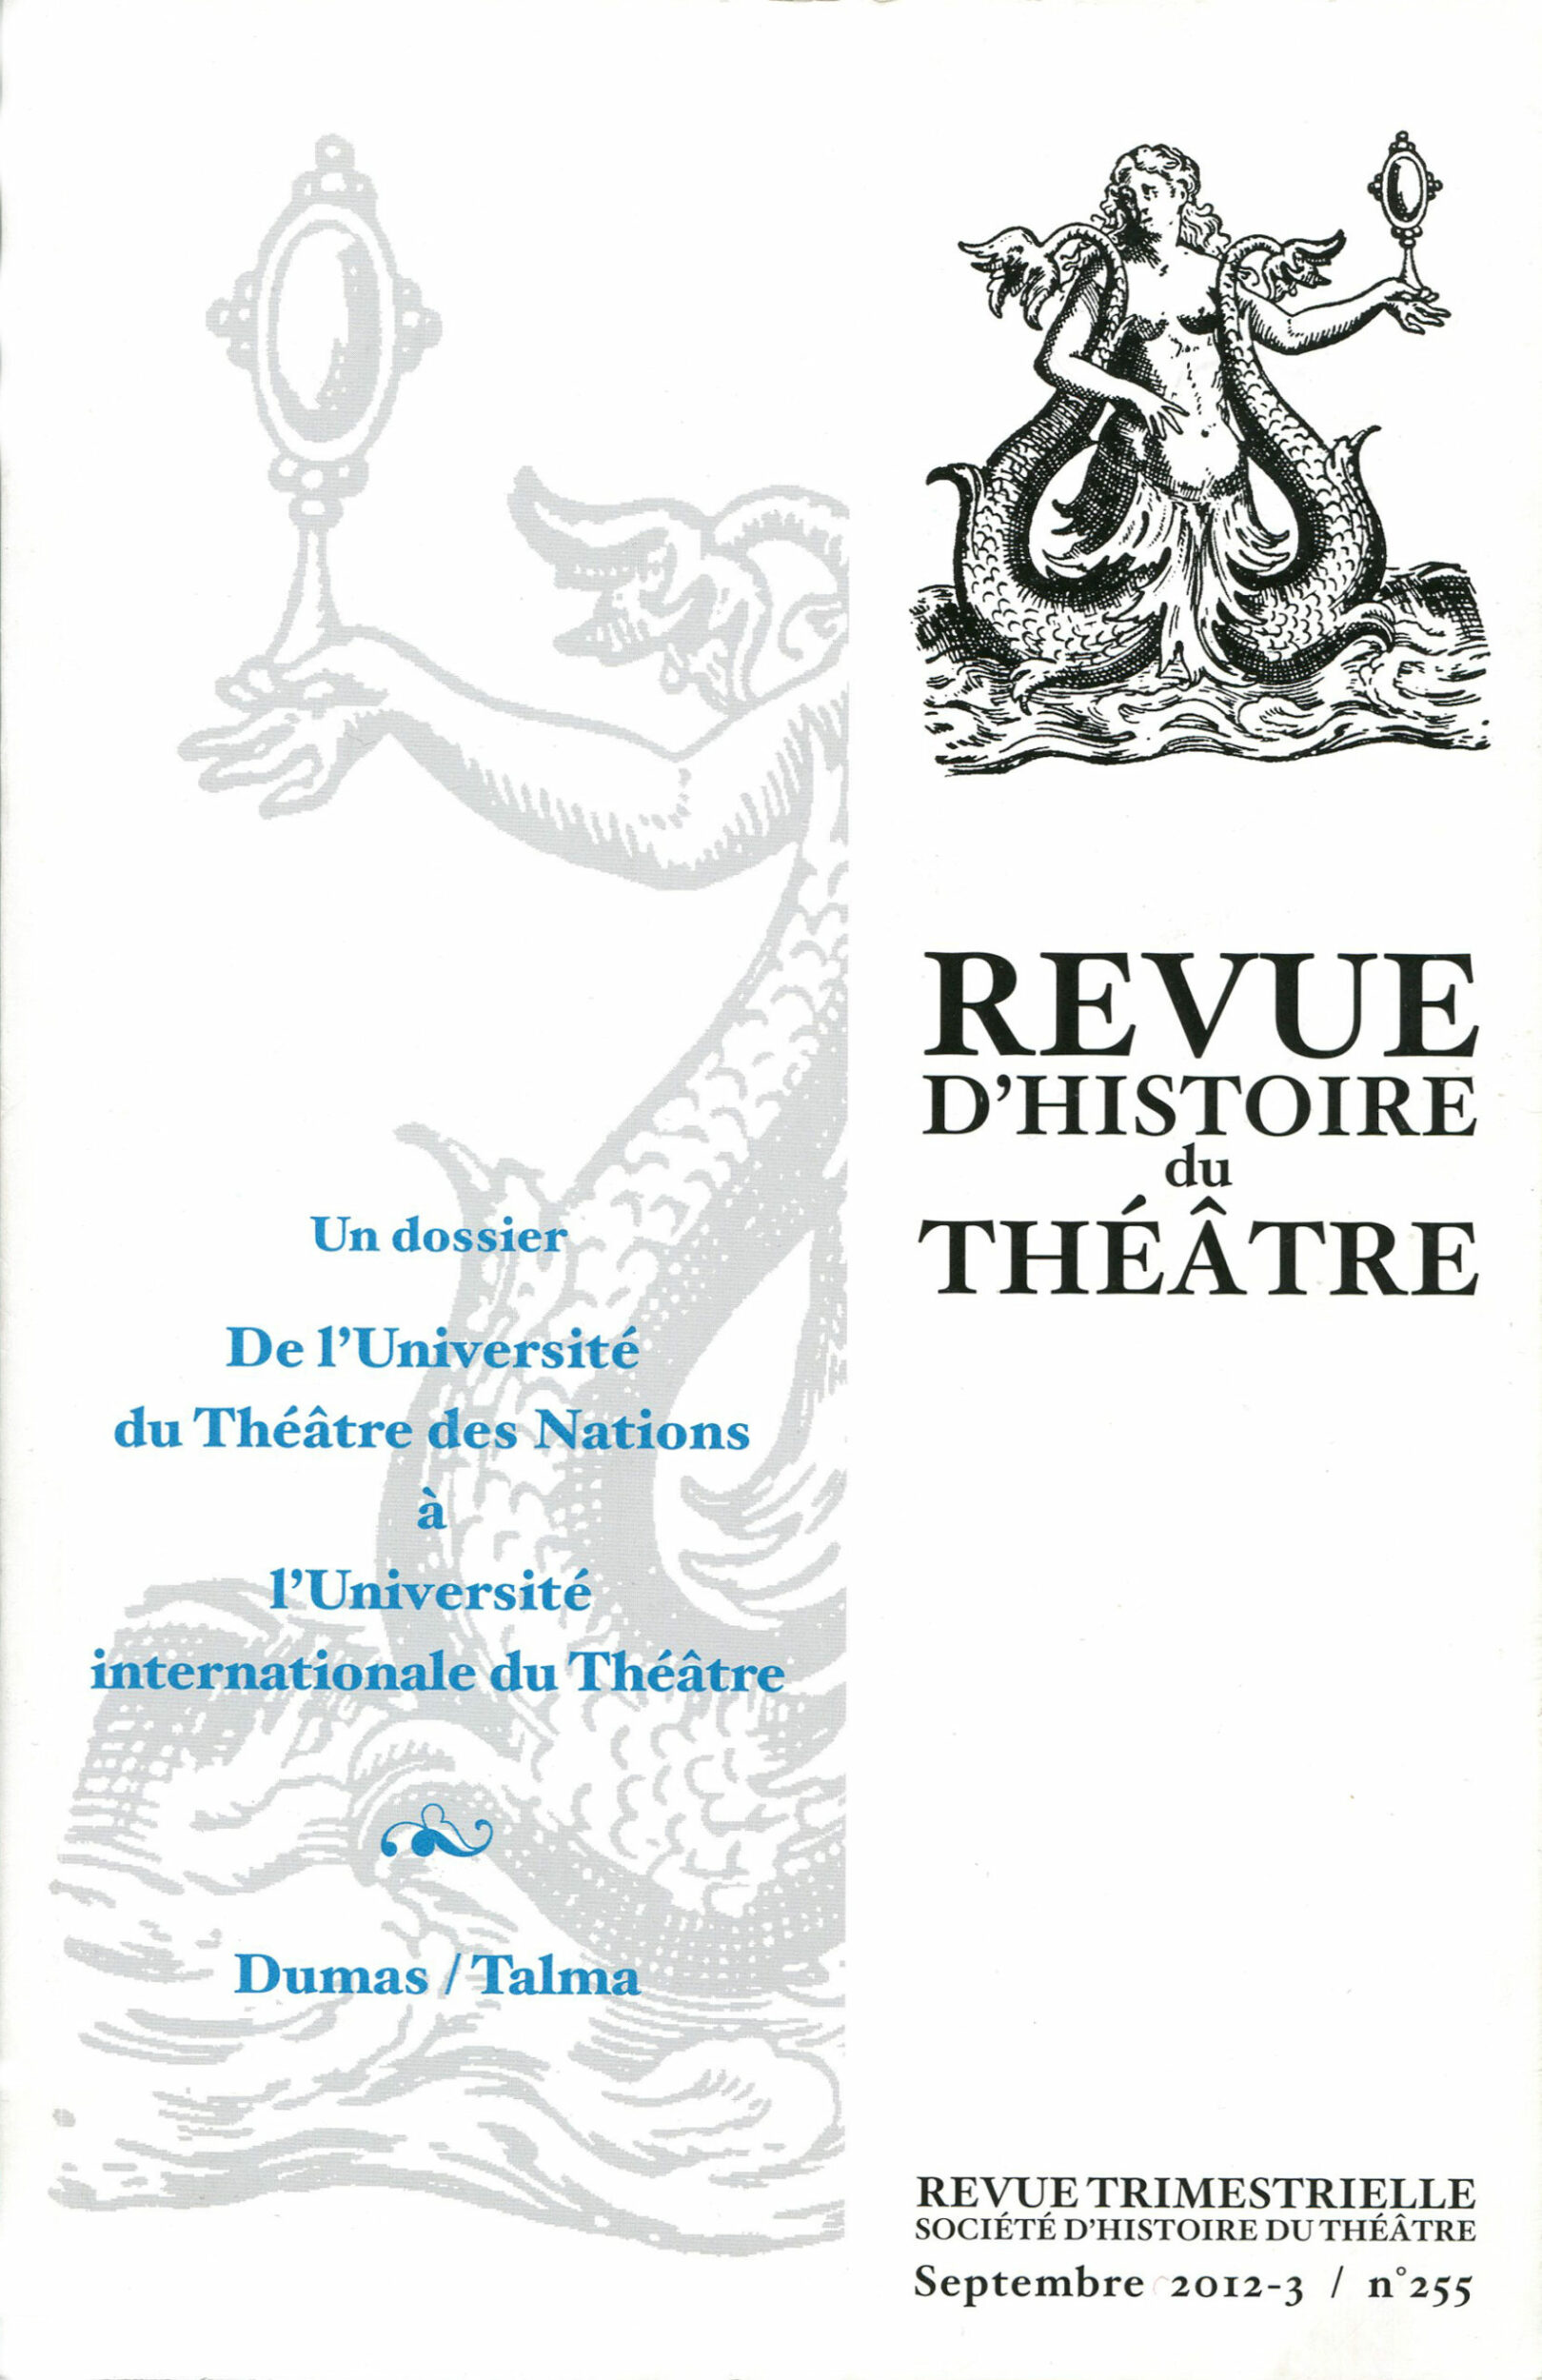 Un dossier : De l’Université du Théâtre des Nations à l’Université internationale du Théâtre